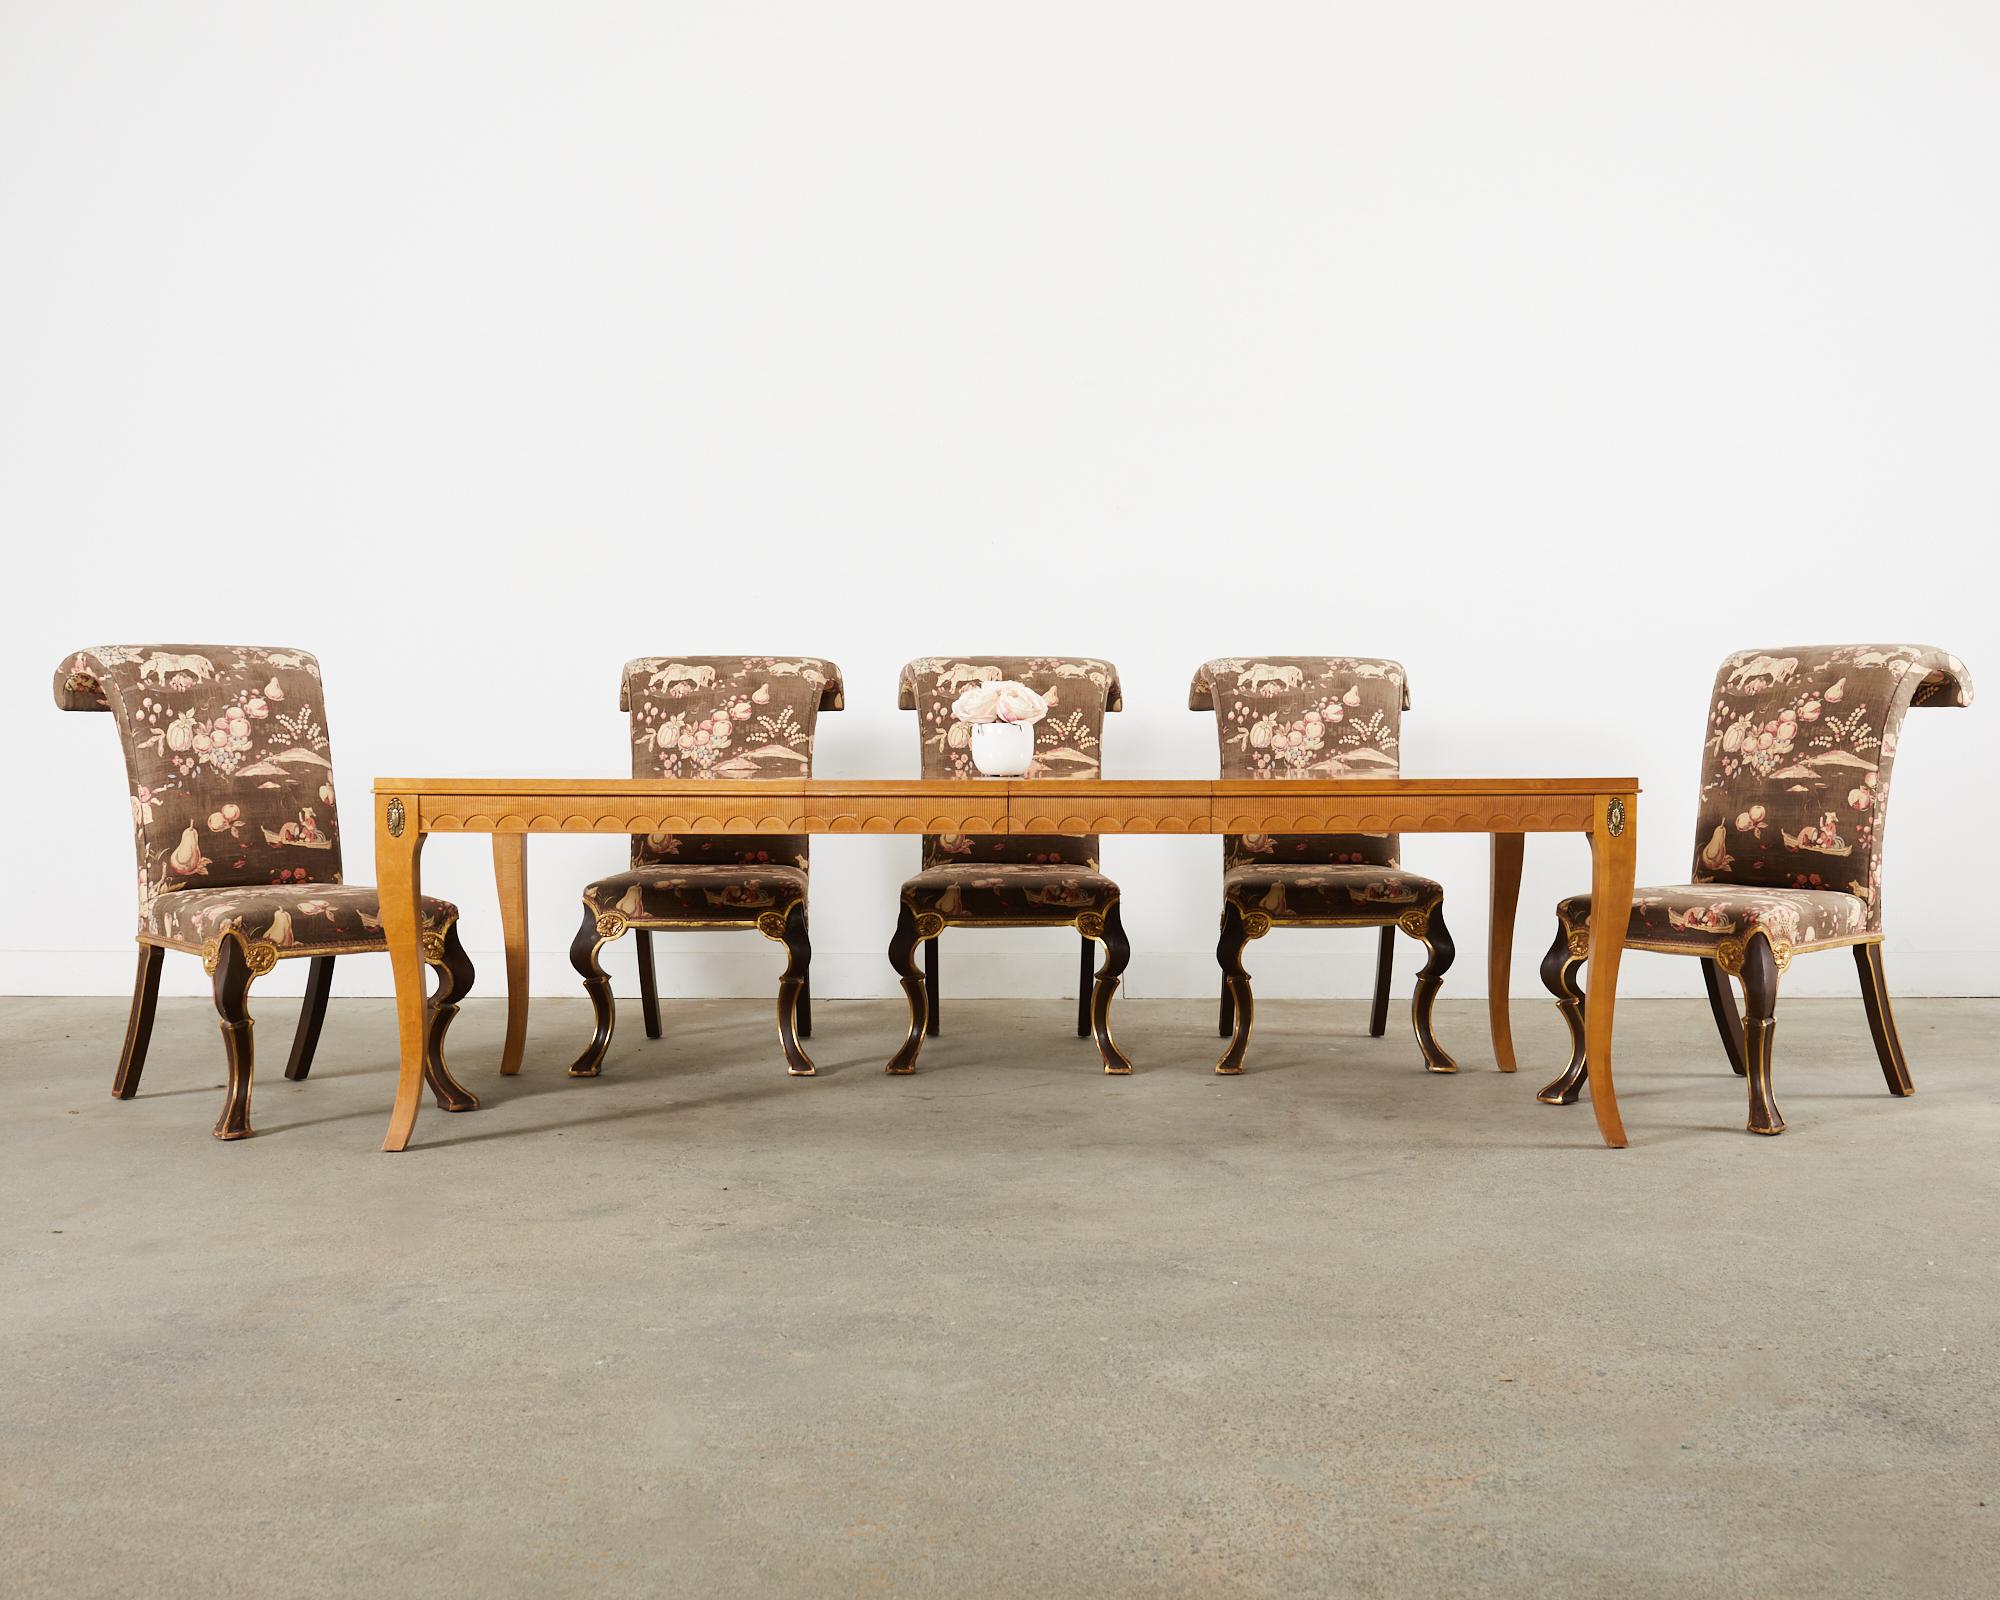 Ensemble spectaculaire de six chaises de salle à manger sur mesure conçu par Rose Tarlow Melrose House Los Angeles, Californie. Les chaises de salle à manger Puccini présentent un cadre en bouleau sculpté à la main avec un dossier à volutes